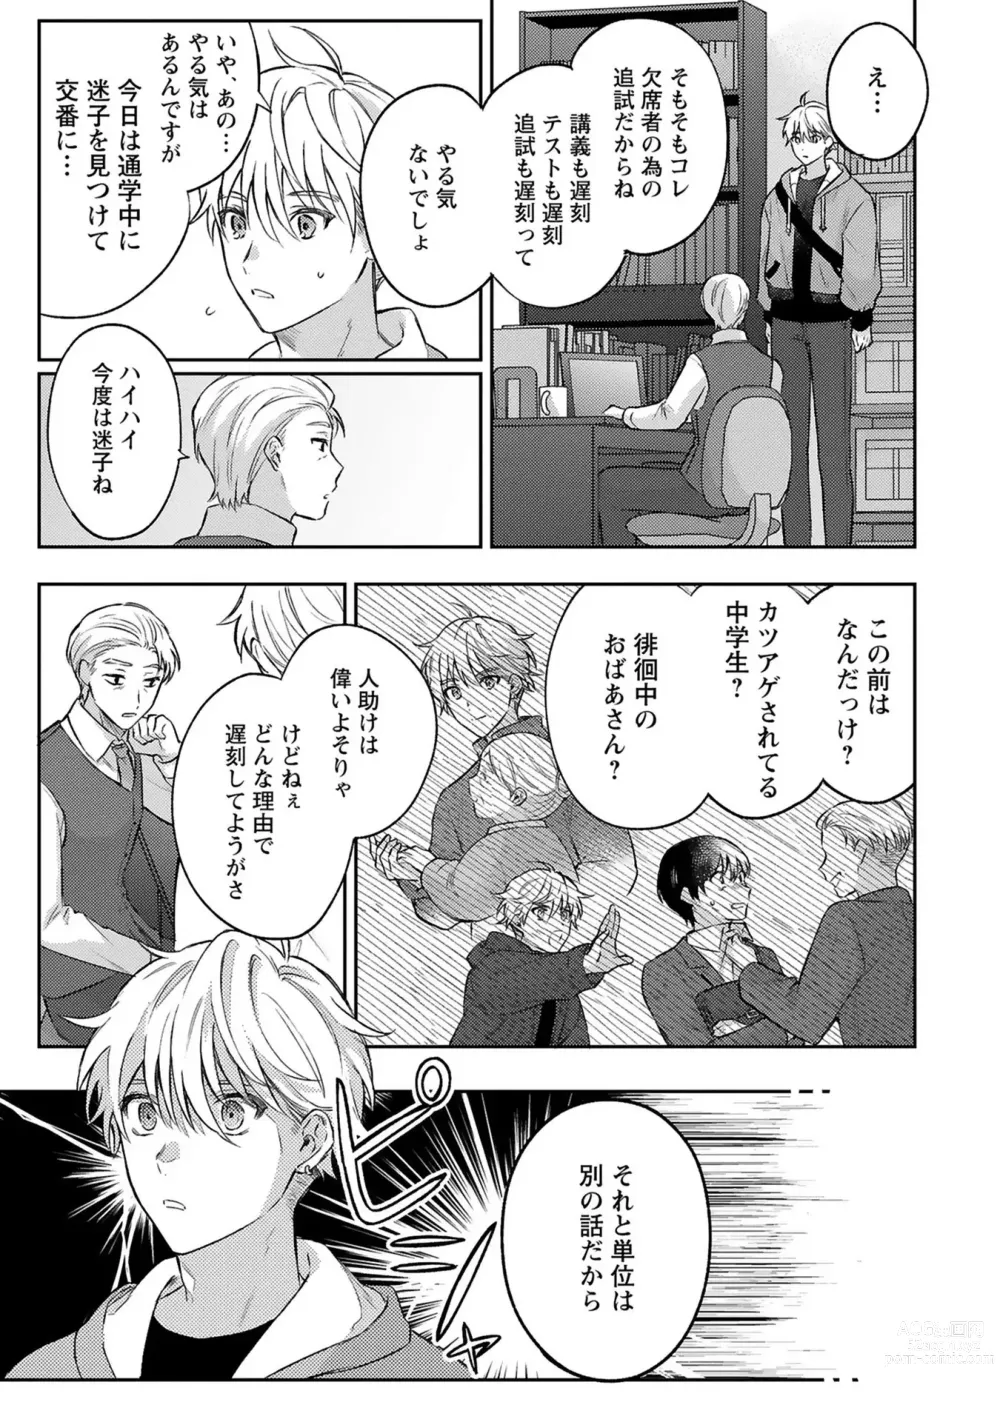 Page 7 of manga Sagashi Mono wa Kimi desu ka